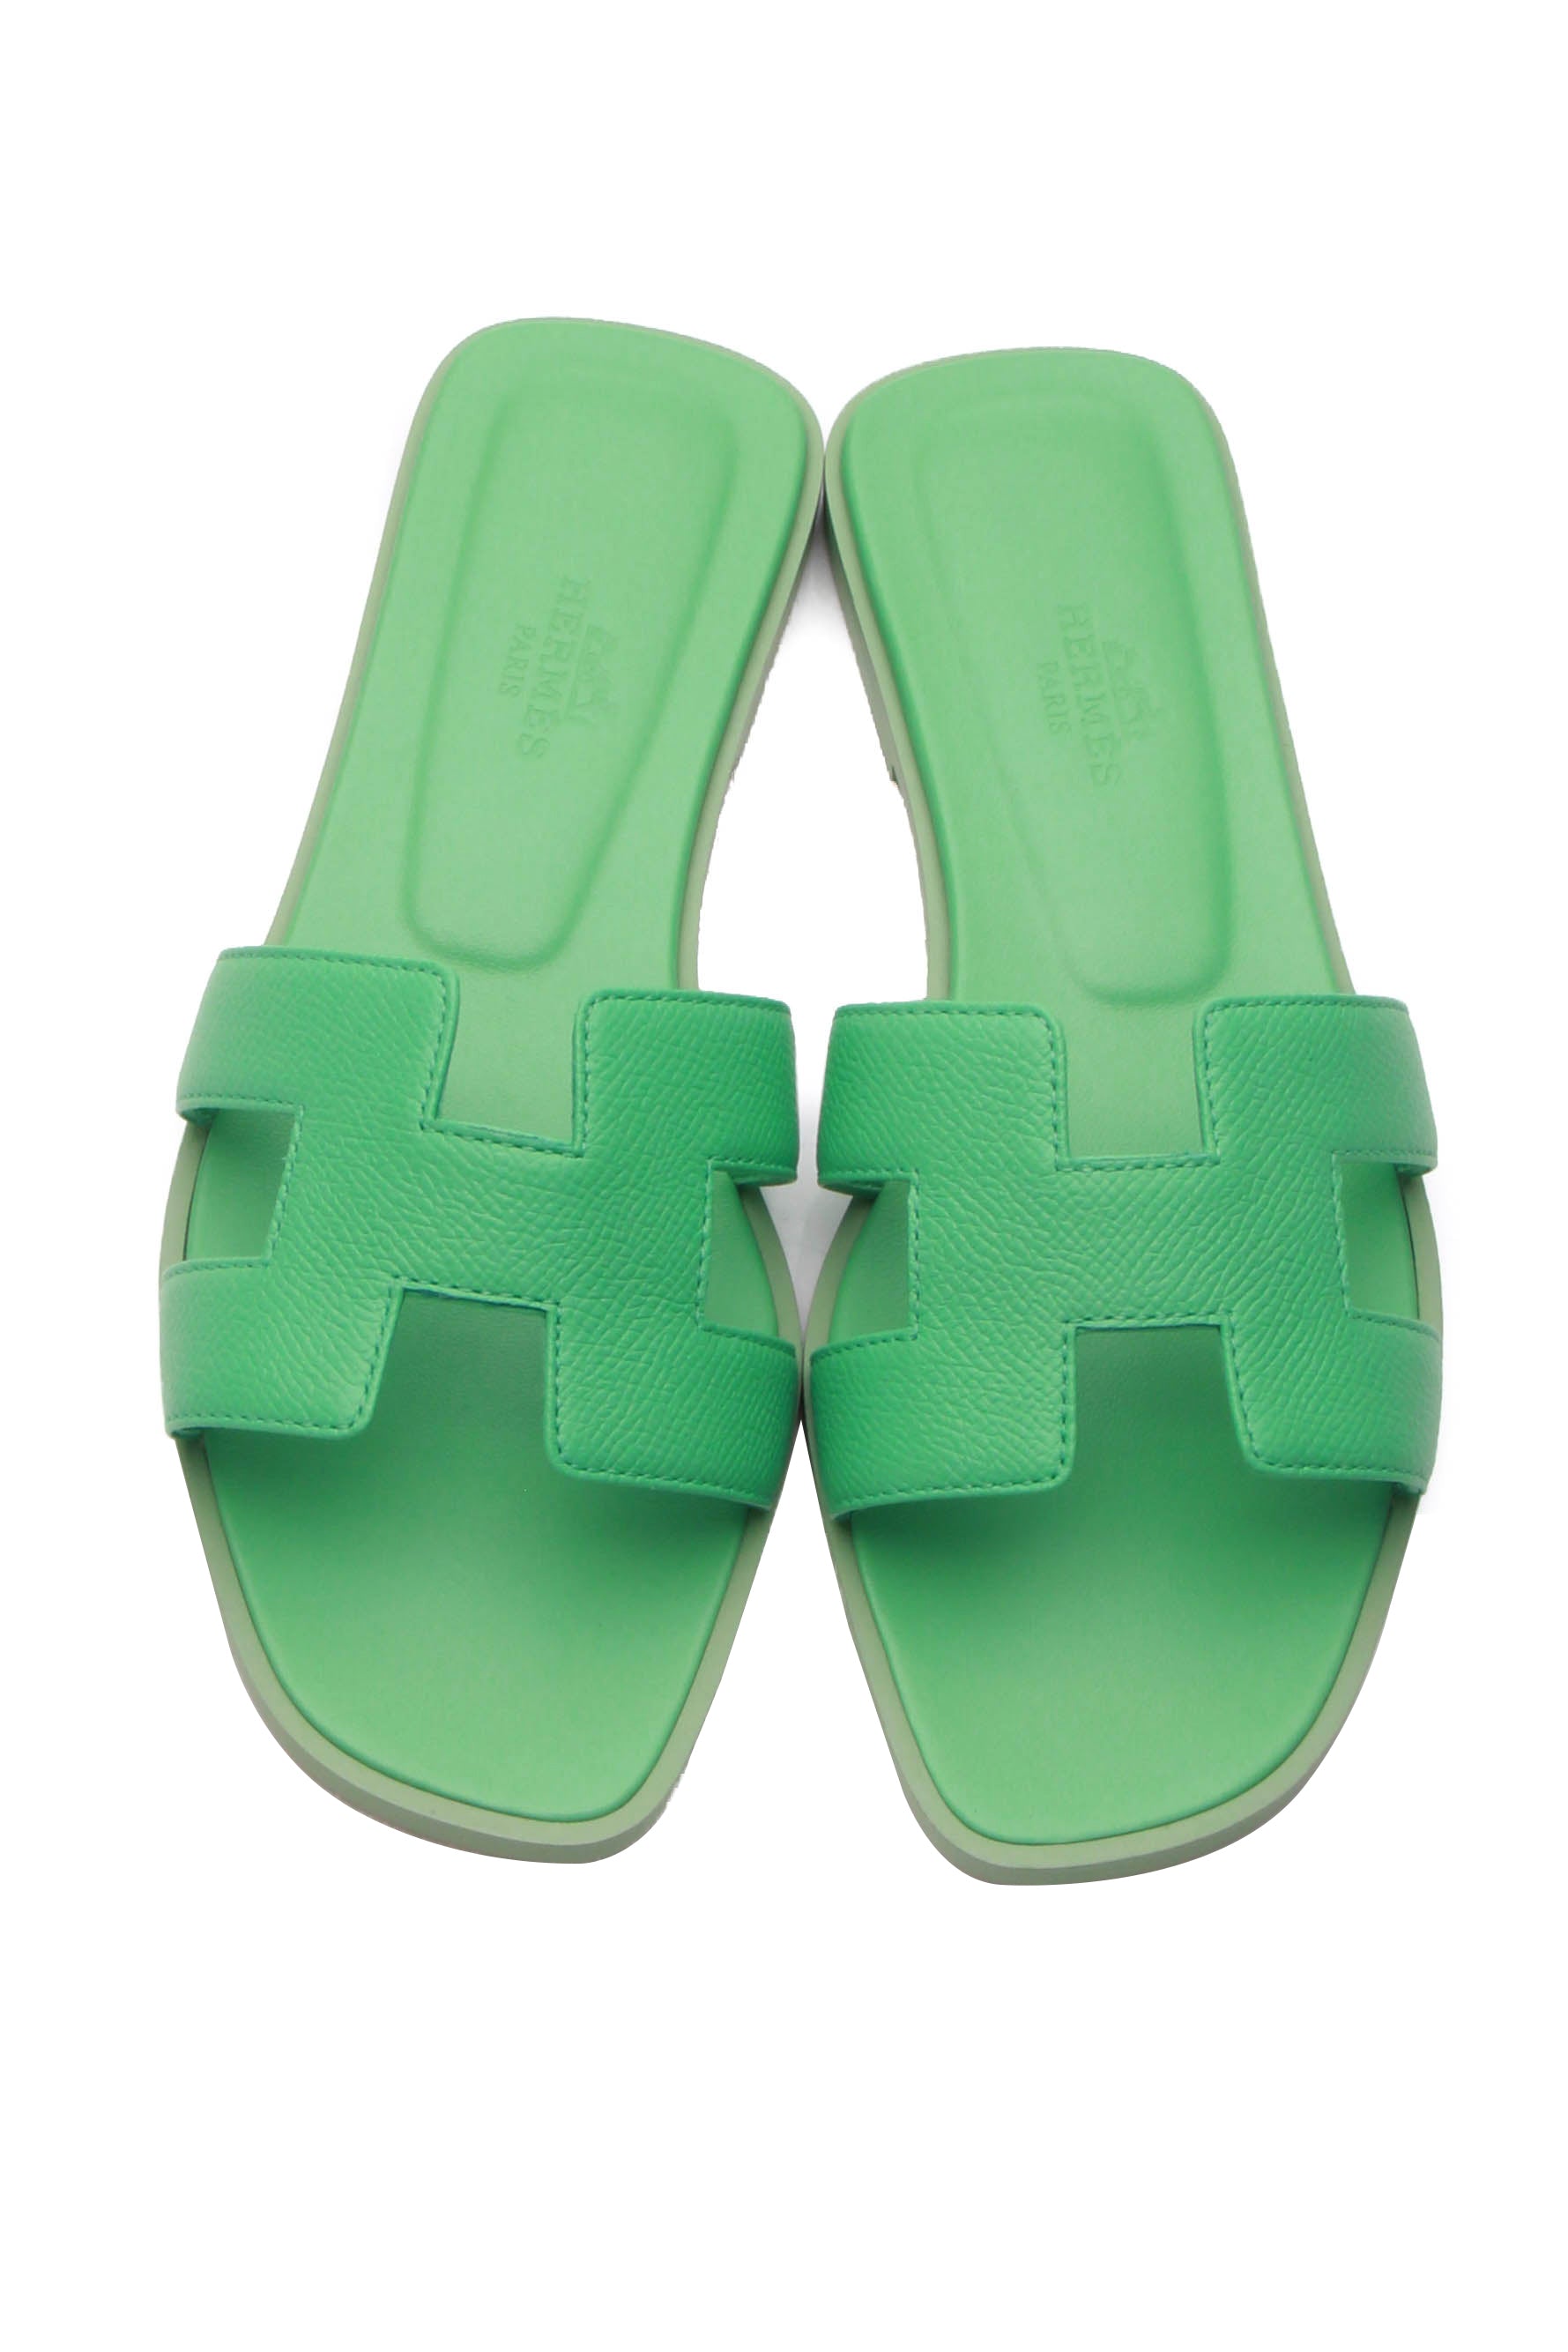 mint green size 5 louis vuitton heeled sandals